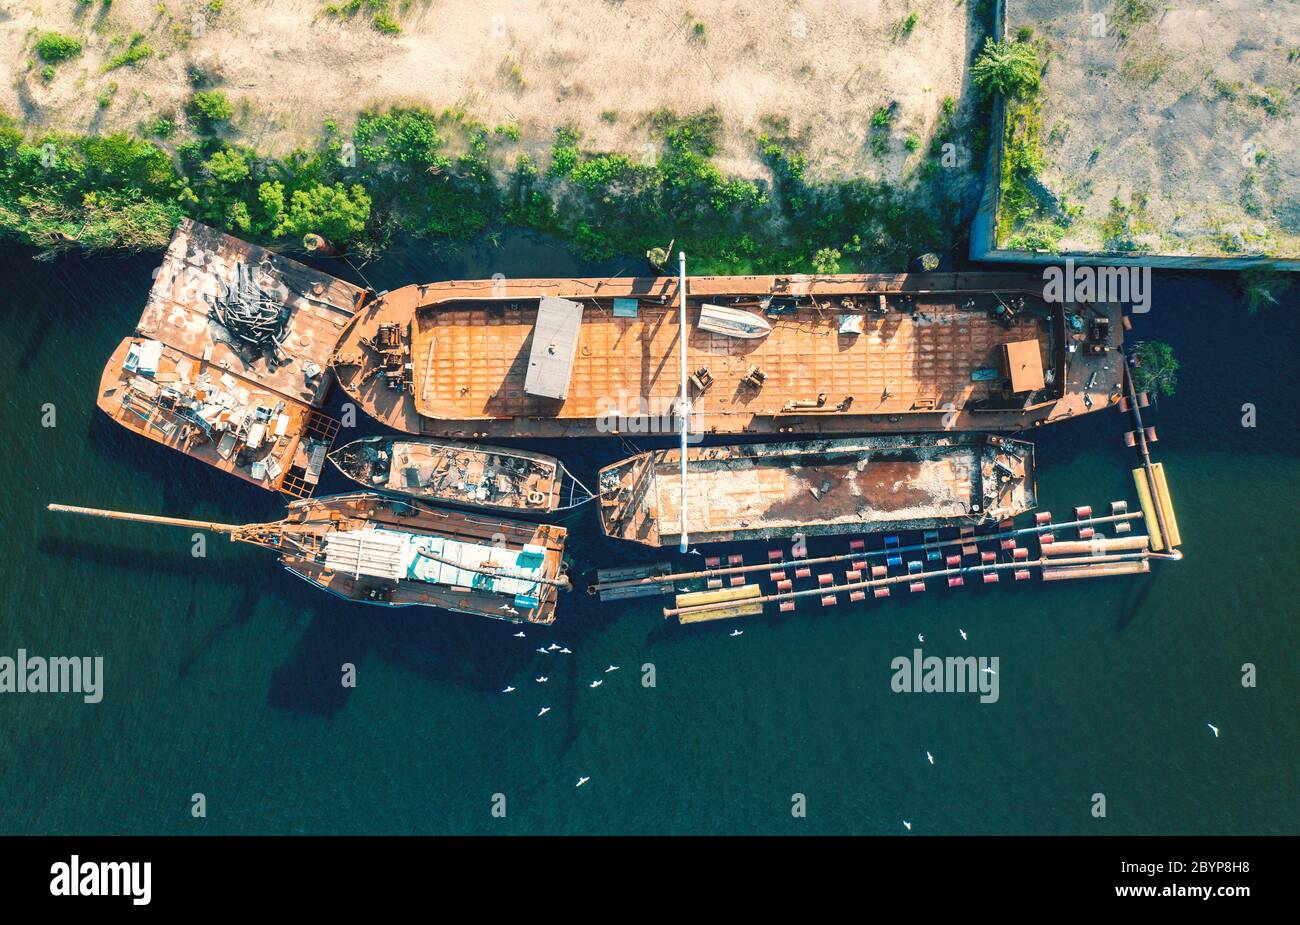 Vista aérea de viejos barcos oxidados y barcos en el mar al atardecer Foto de stock